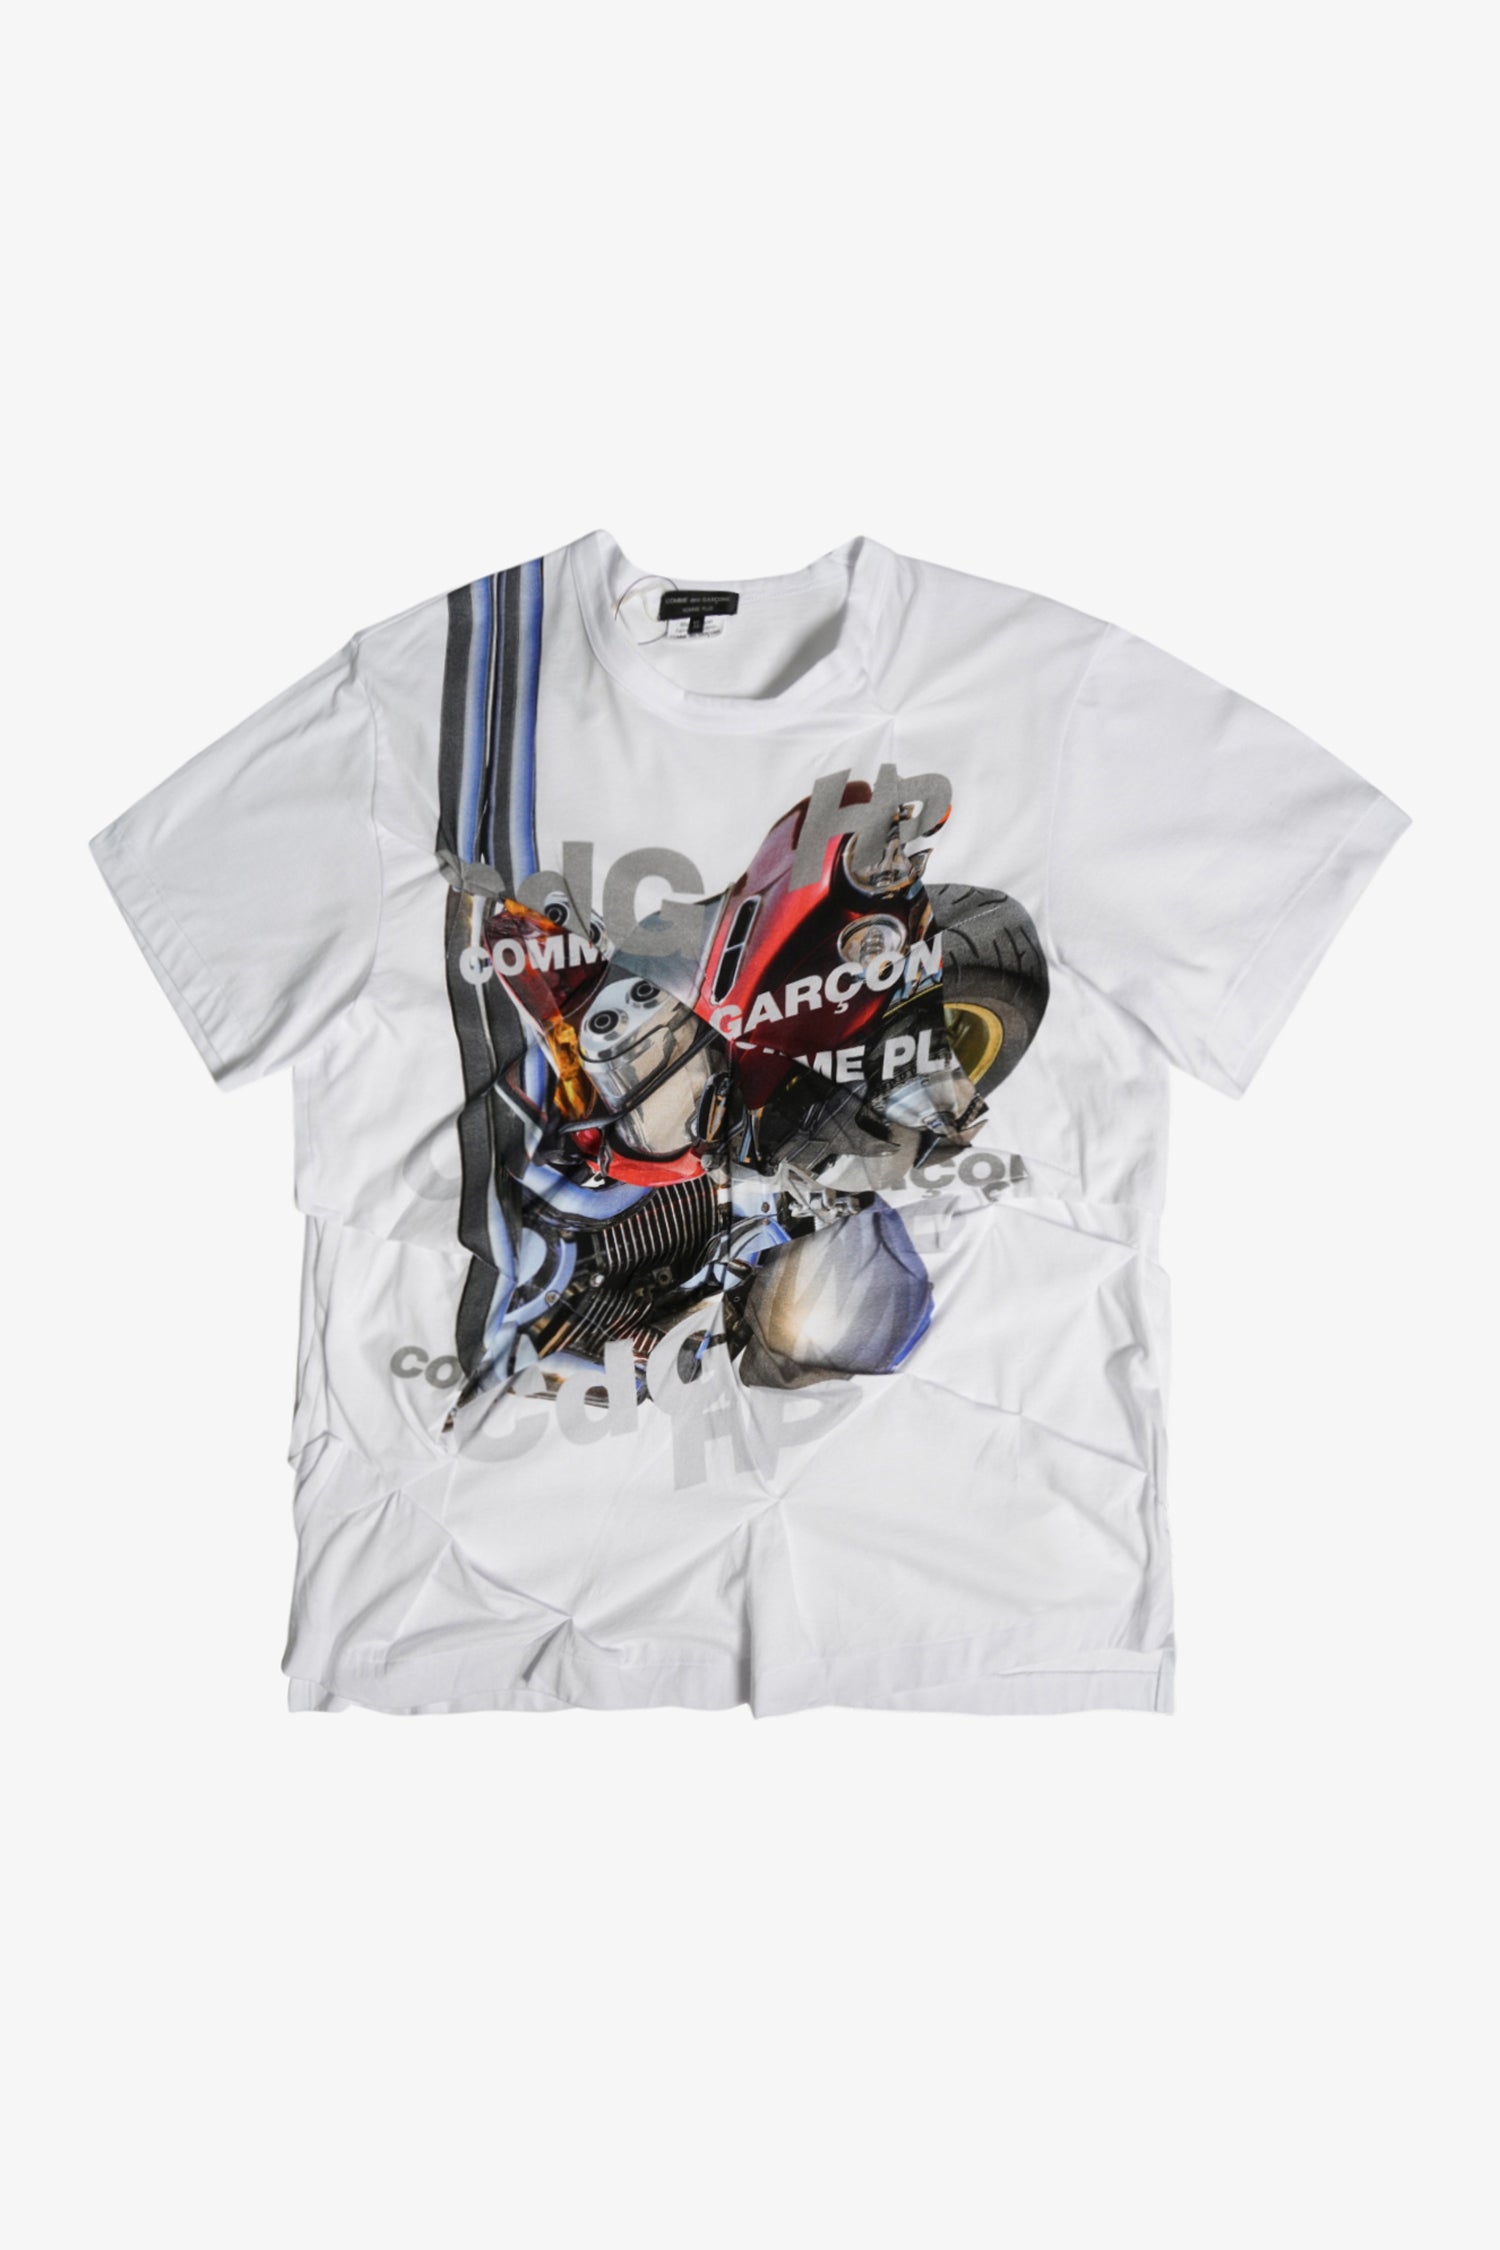 Selectshop FRAME - COMME DES GARÇONS HOMME PLUS Deconstructed Printed T-Shirt T-shirt Dubai